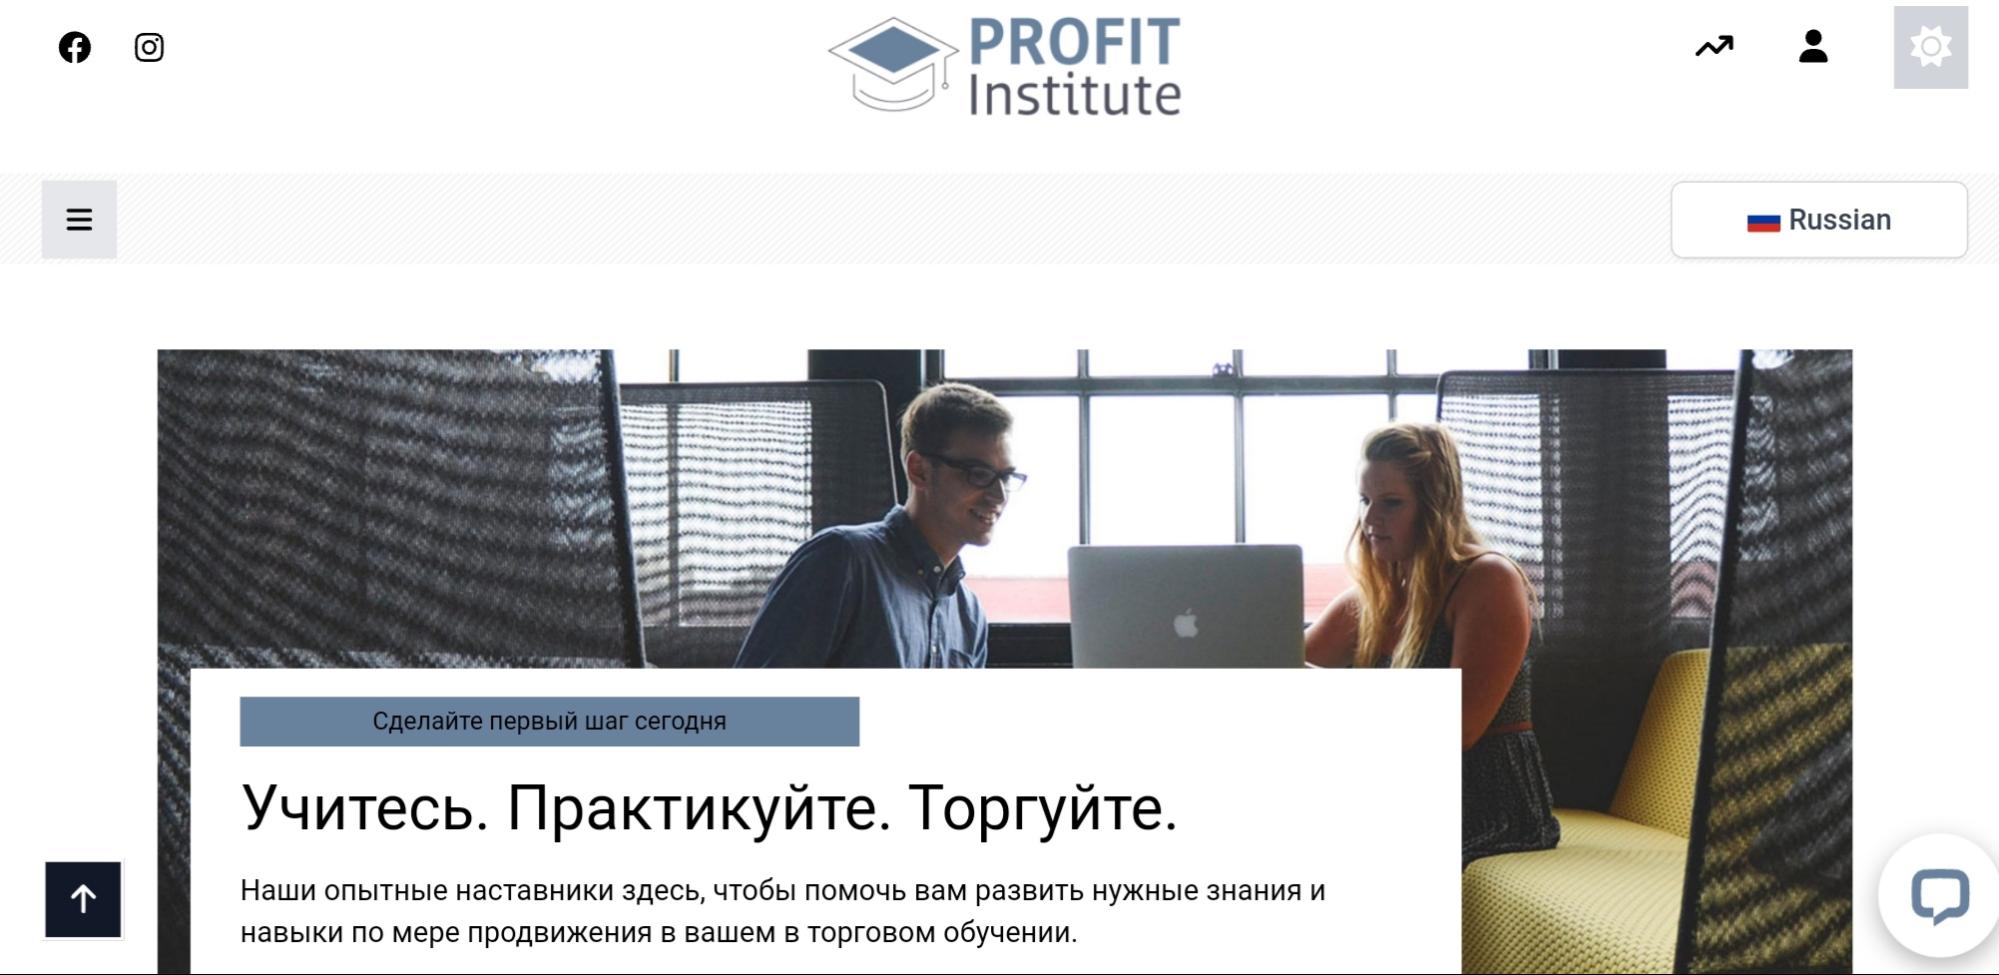 Profit Institute сайт